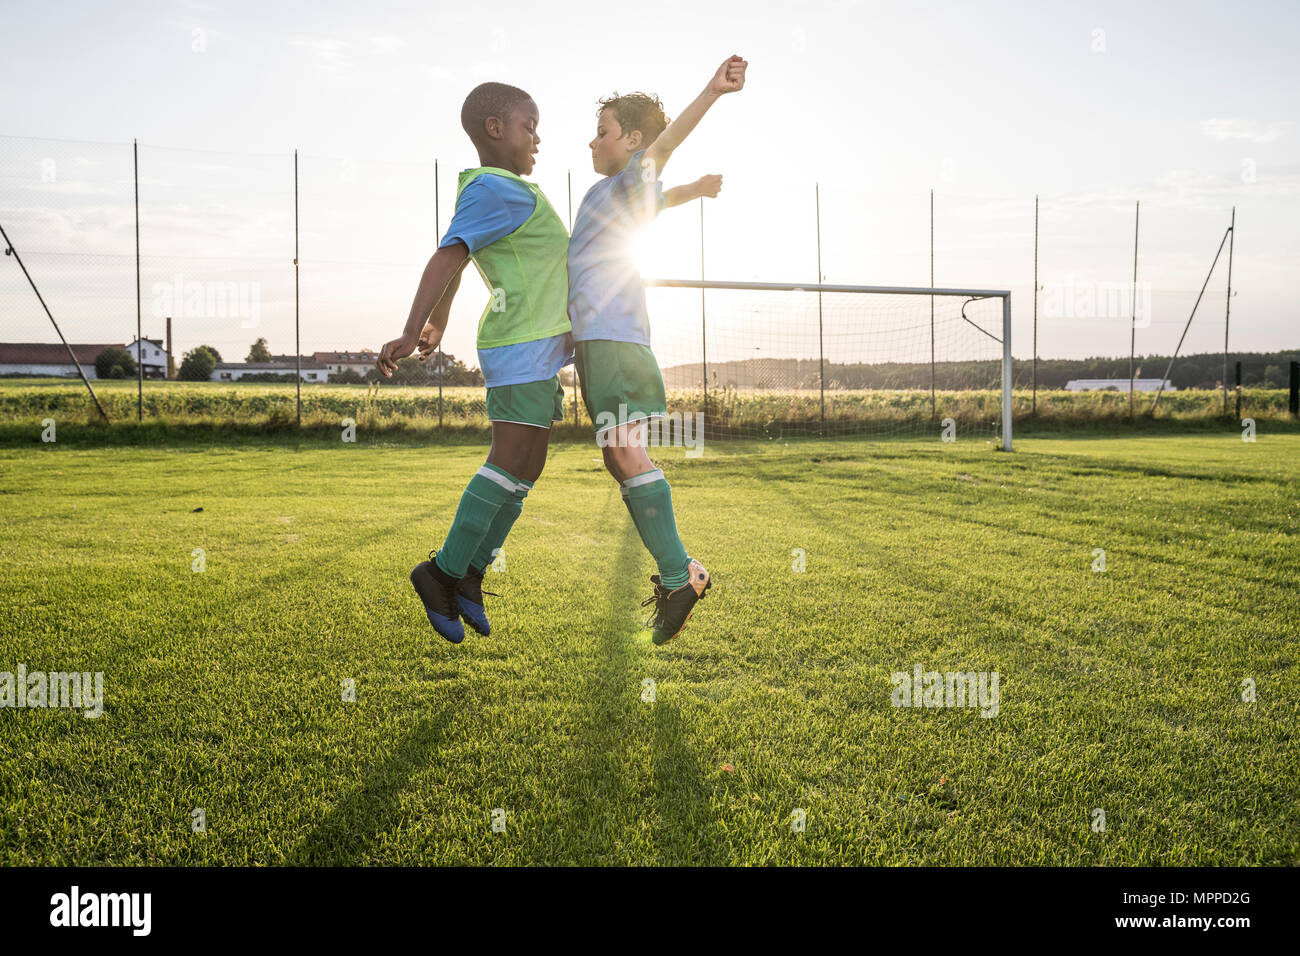 Los jóvenes futbolistas saltando sobre terreno de fútbol Foto de stock